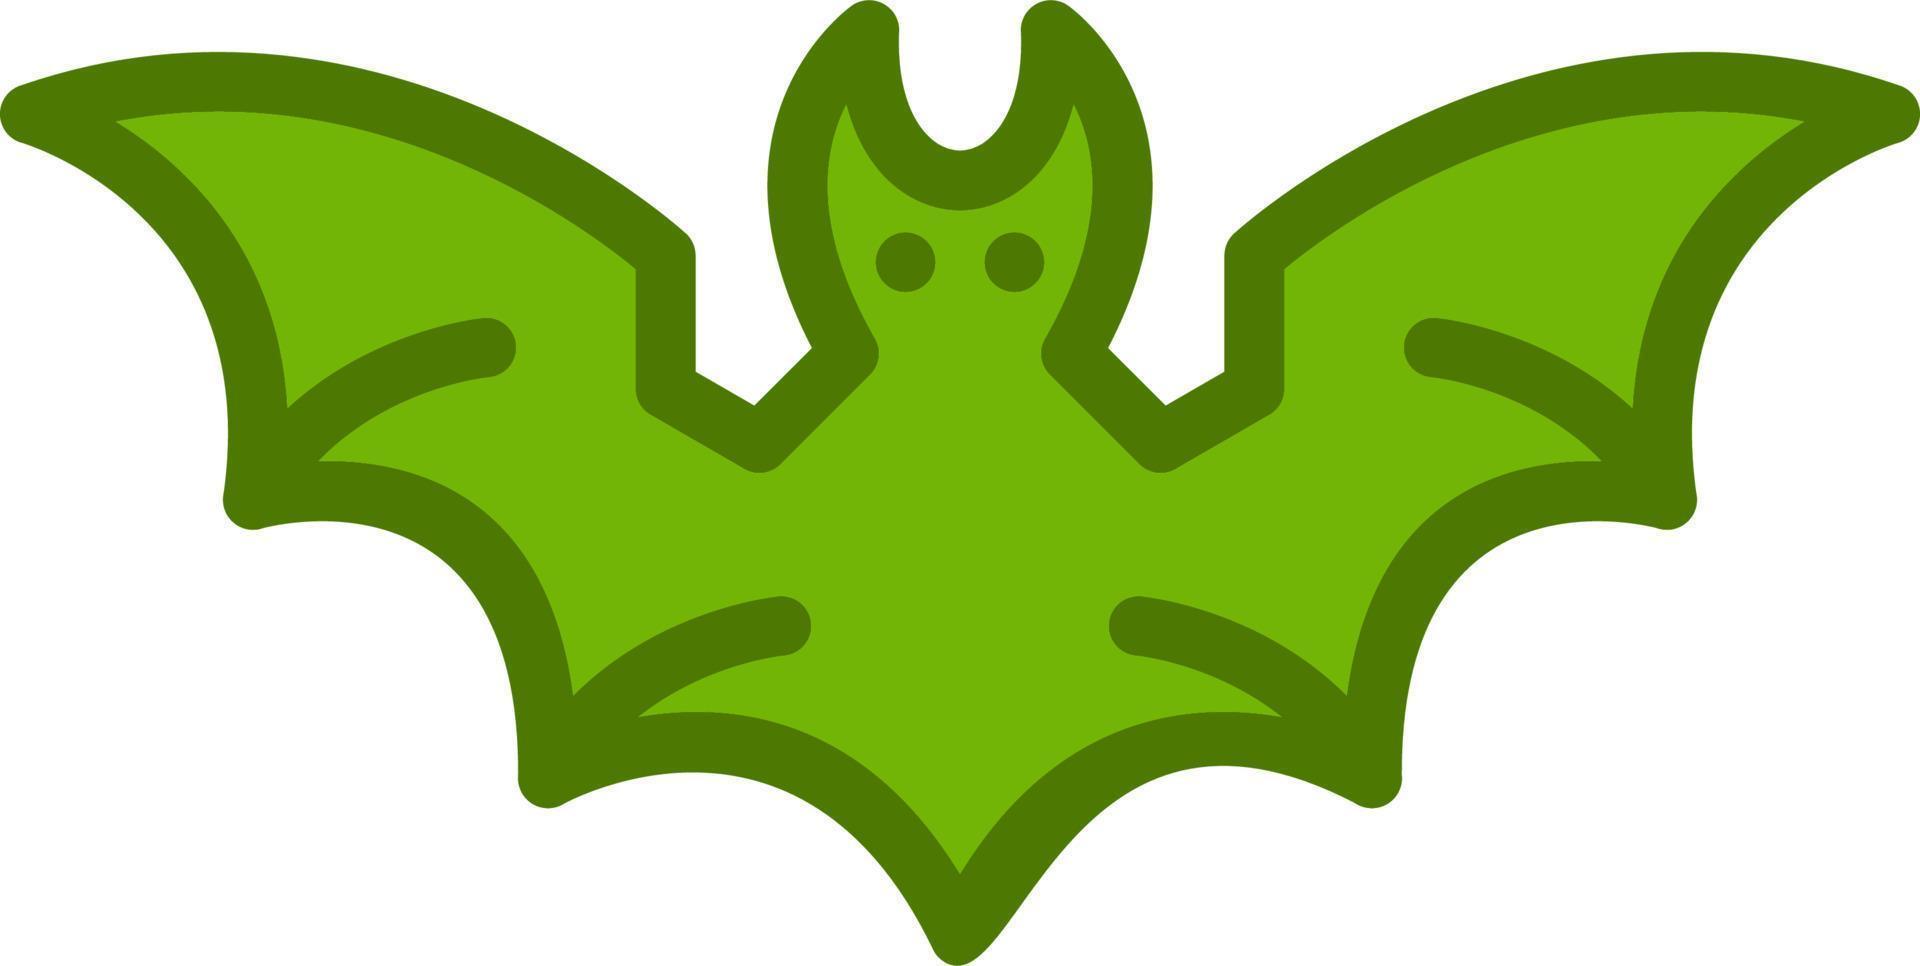 Bats Vector Icon